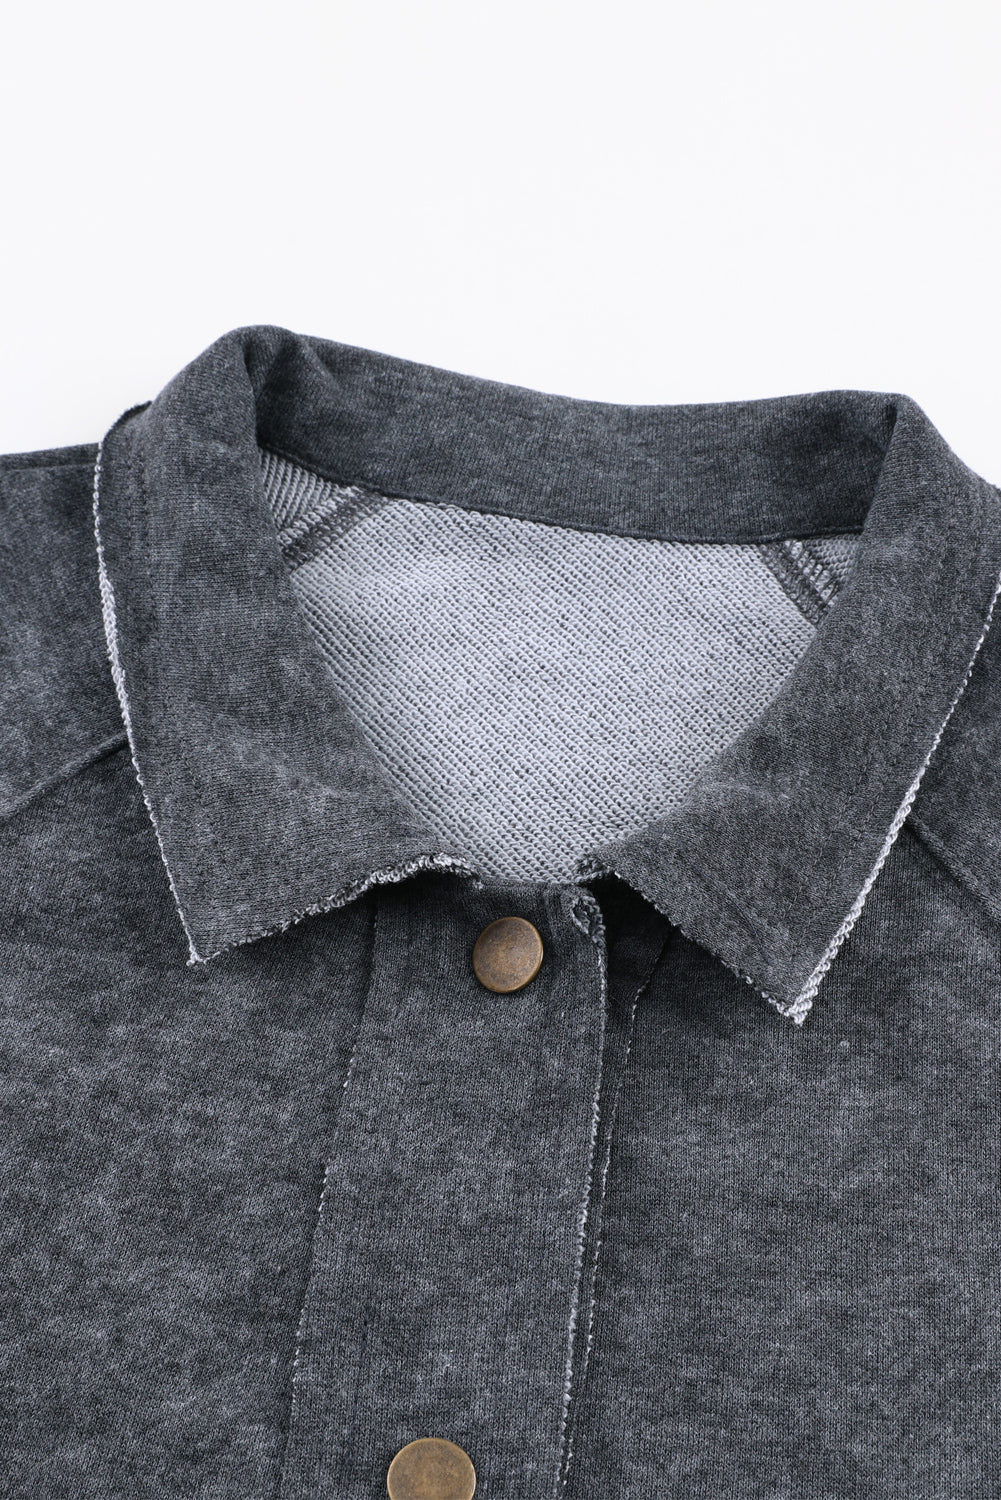 Veste boutonnée grise vintage délavée avec poche à rabat